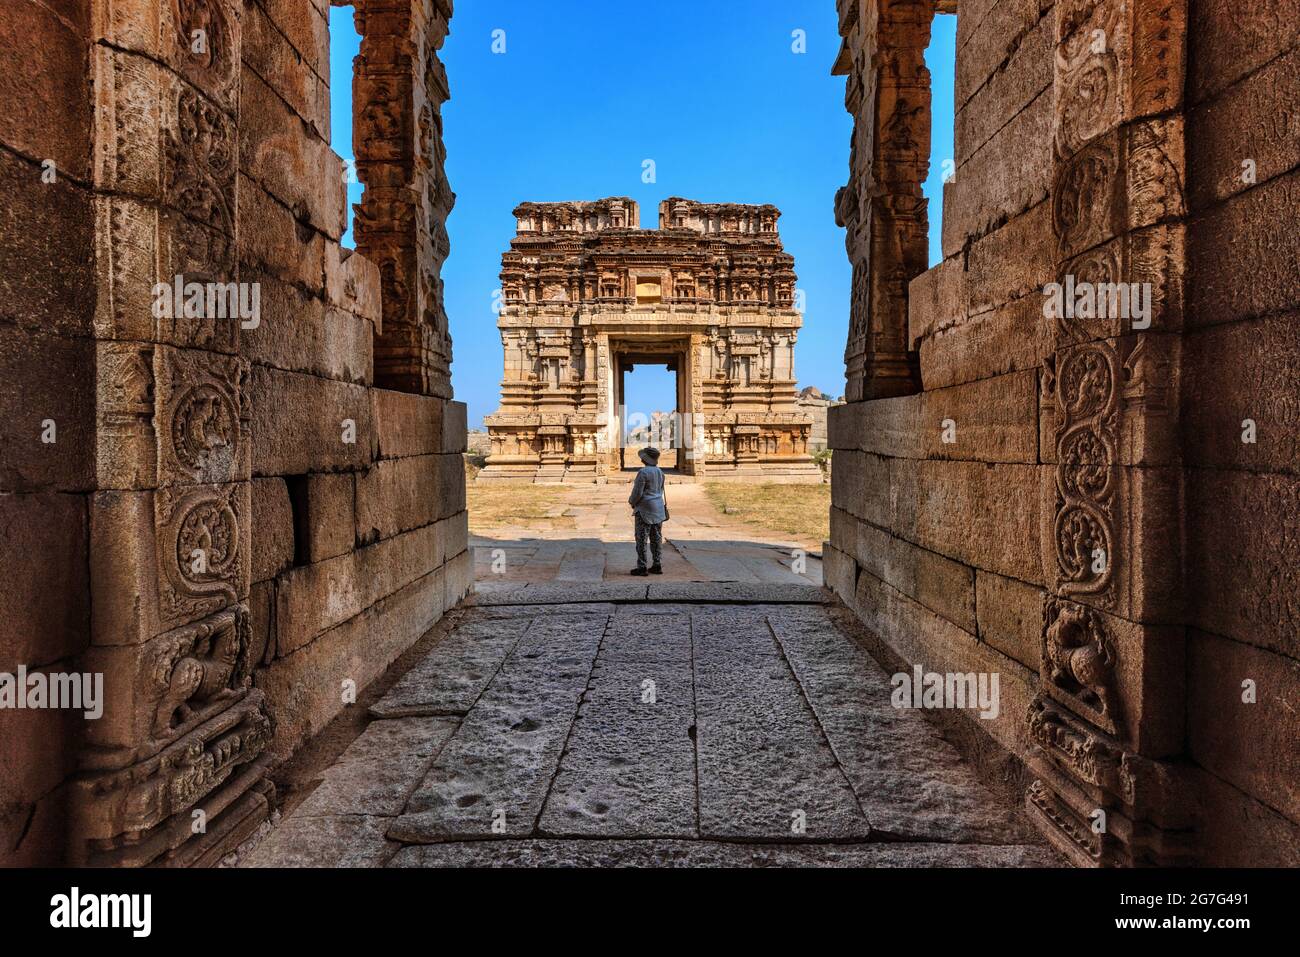 The view of ancient Achyutaraya Temple. Group of ruins monuments at Hampi was the centre of the Hindu Vijayanagara Empire, Hampi, Karnataka, India Stock Photo